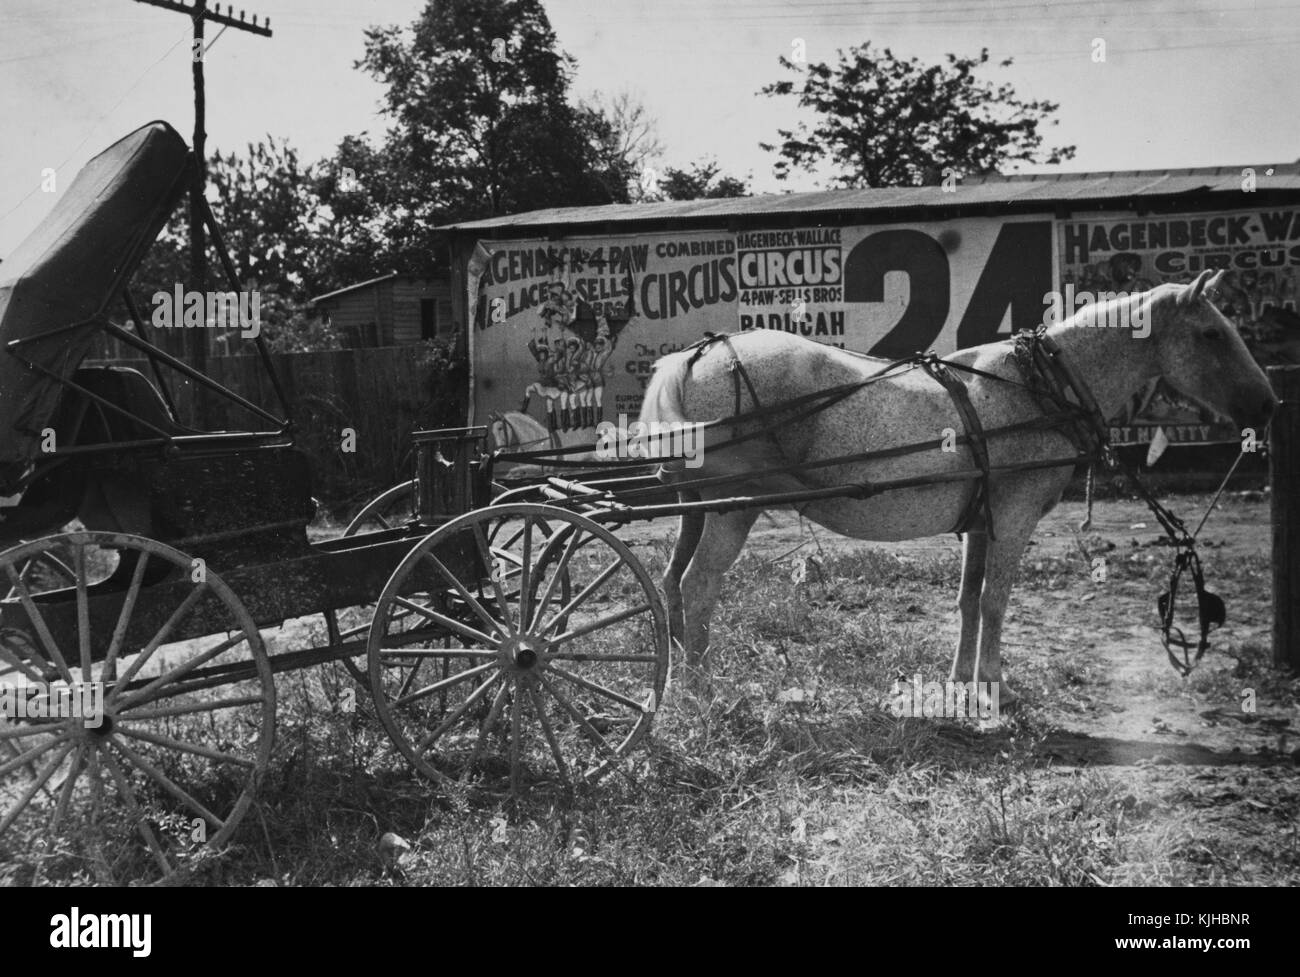 Schwarz-weiß Foto von einer Pferdekutsche vor af ein Gebäude Seite Werbung für ein Zirkus, von Ben Shahn, Litauisch geboren, amerikanische Künstler für seine Arbeit bekannt für die Farm Security Administration dokumentieren die Auswirkungen der Großen Depression, smithland, Kentucky, 1935 von der New York Public Library. Stockfoto